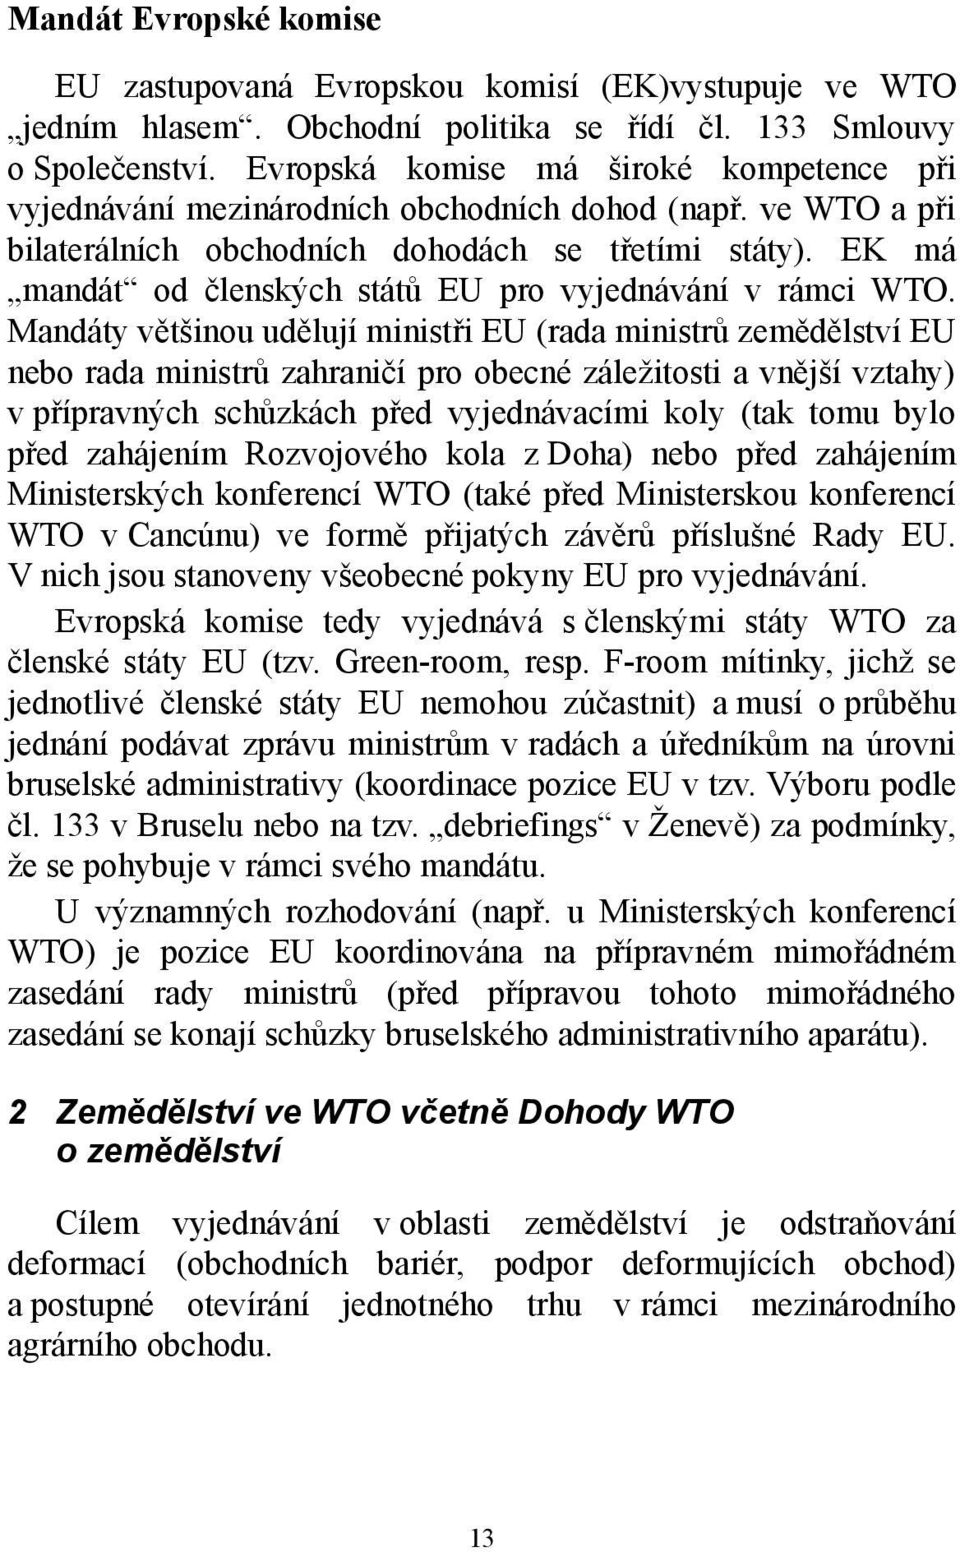 EK má mandát od členských států EU pro vyjednávání v rámci WTO.